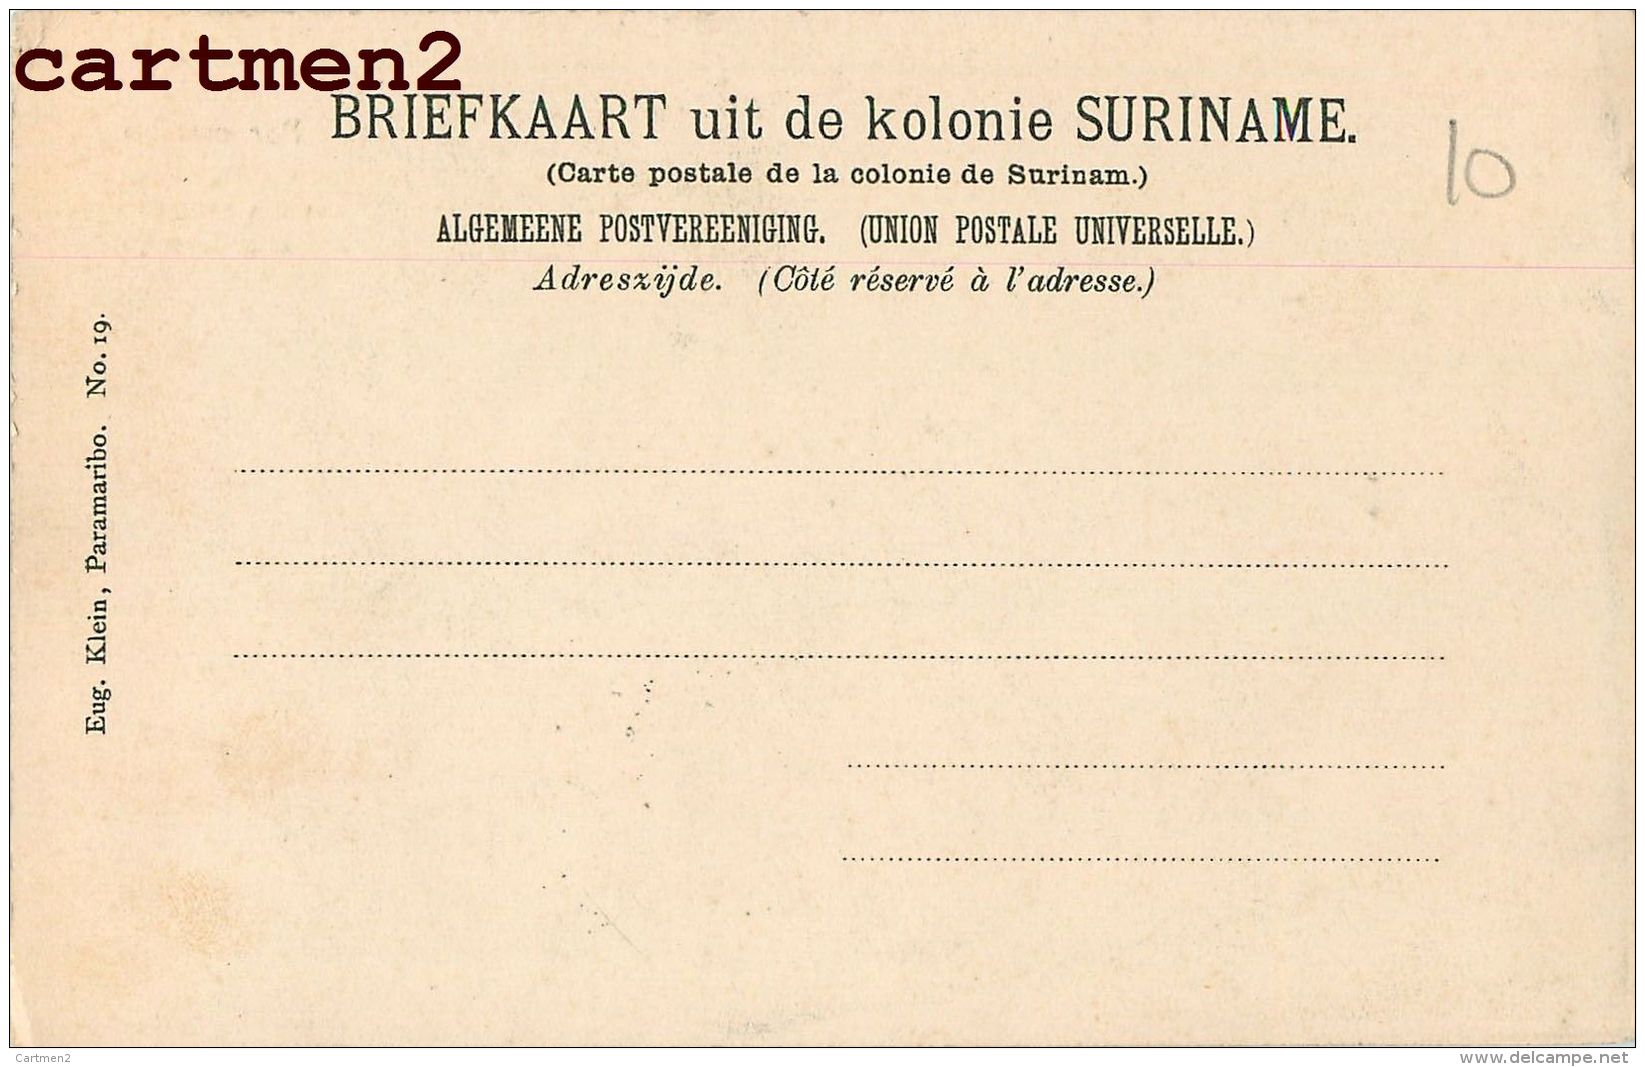 PARAMARIBO SURINAM MARKT AAN DER HEILIGEN WEG Z.G. WOWOJO SURINAME 1900 KOLONIE - Suriname